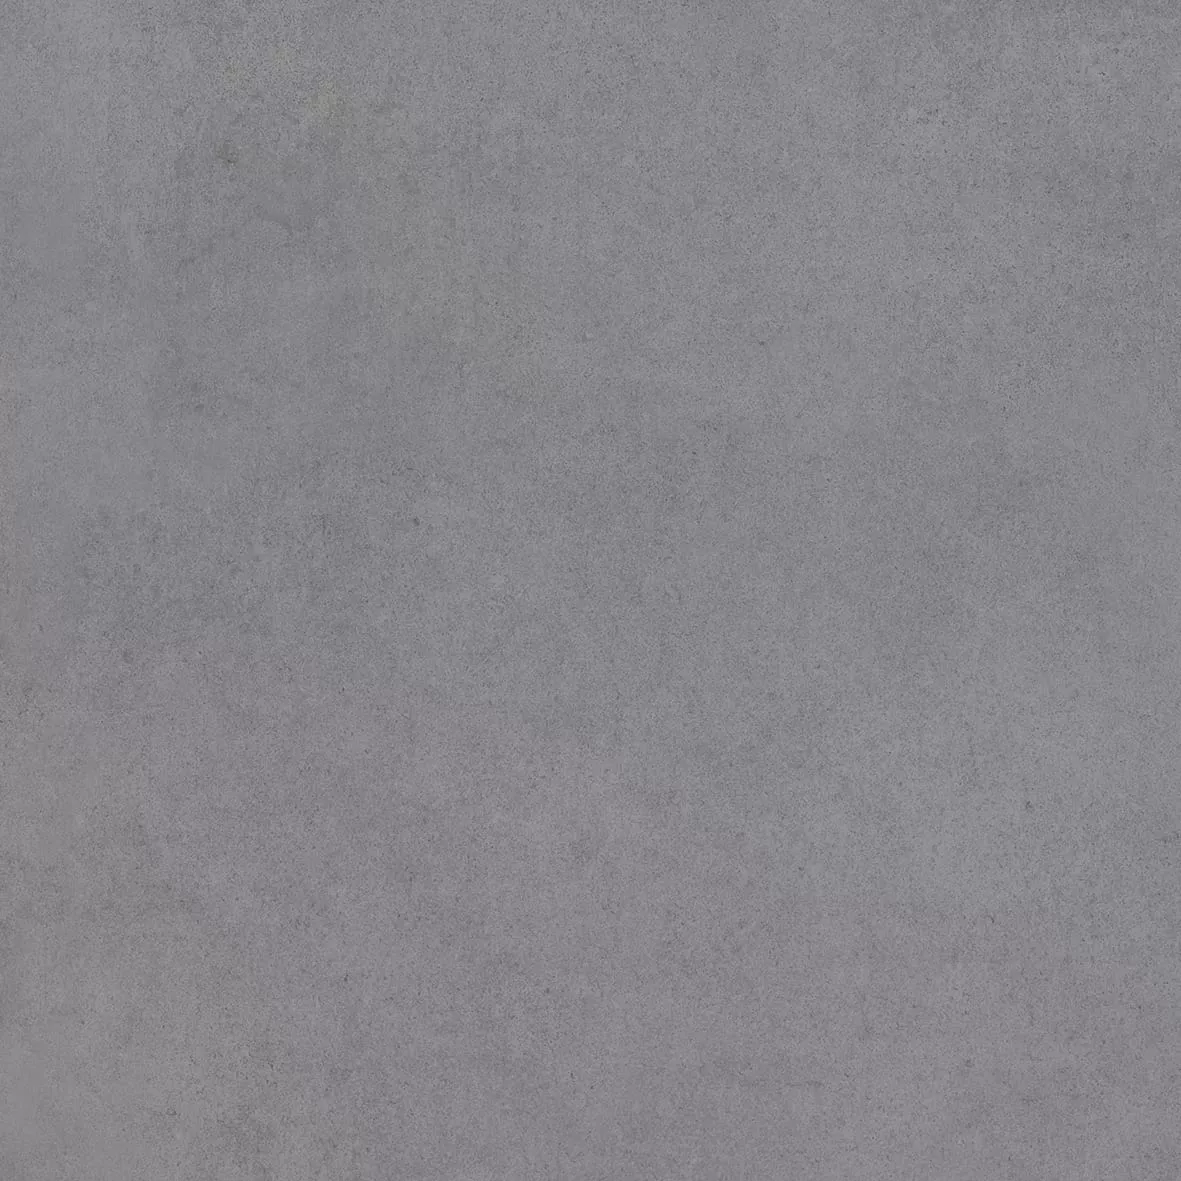 Gresie portelanata, 59 × 59 cm, gri inchis, Tempo, Cesarom